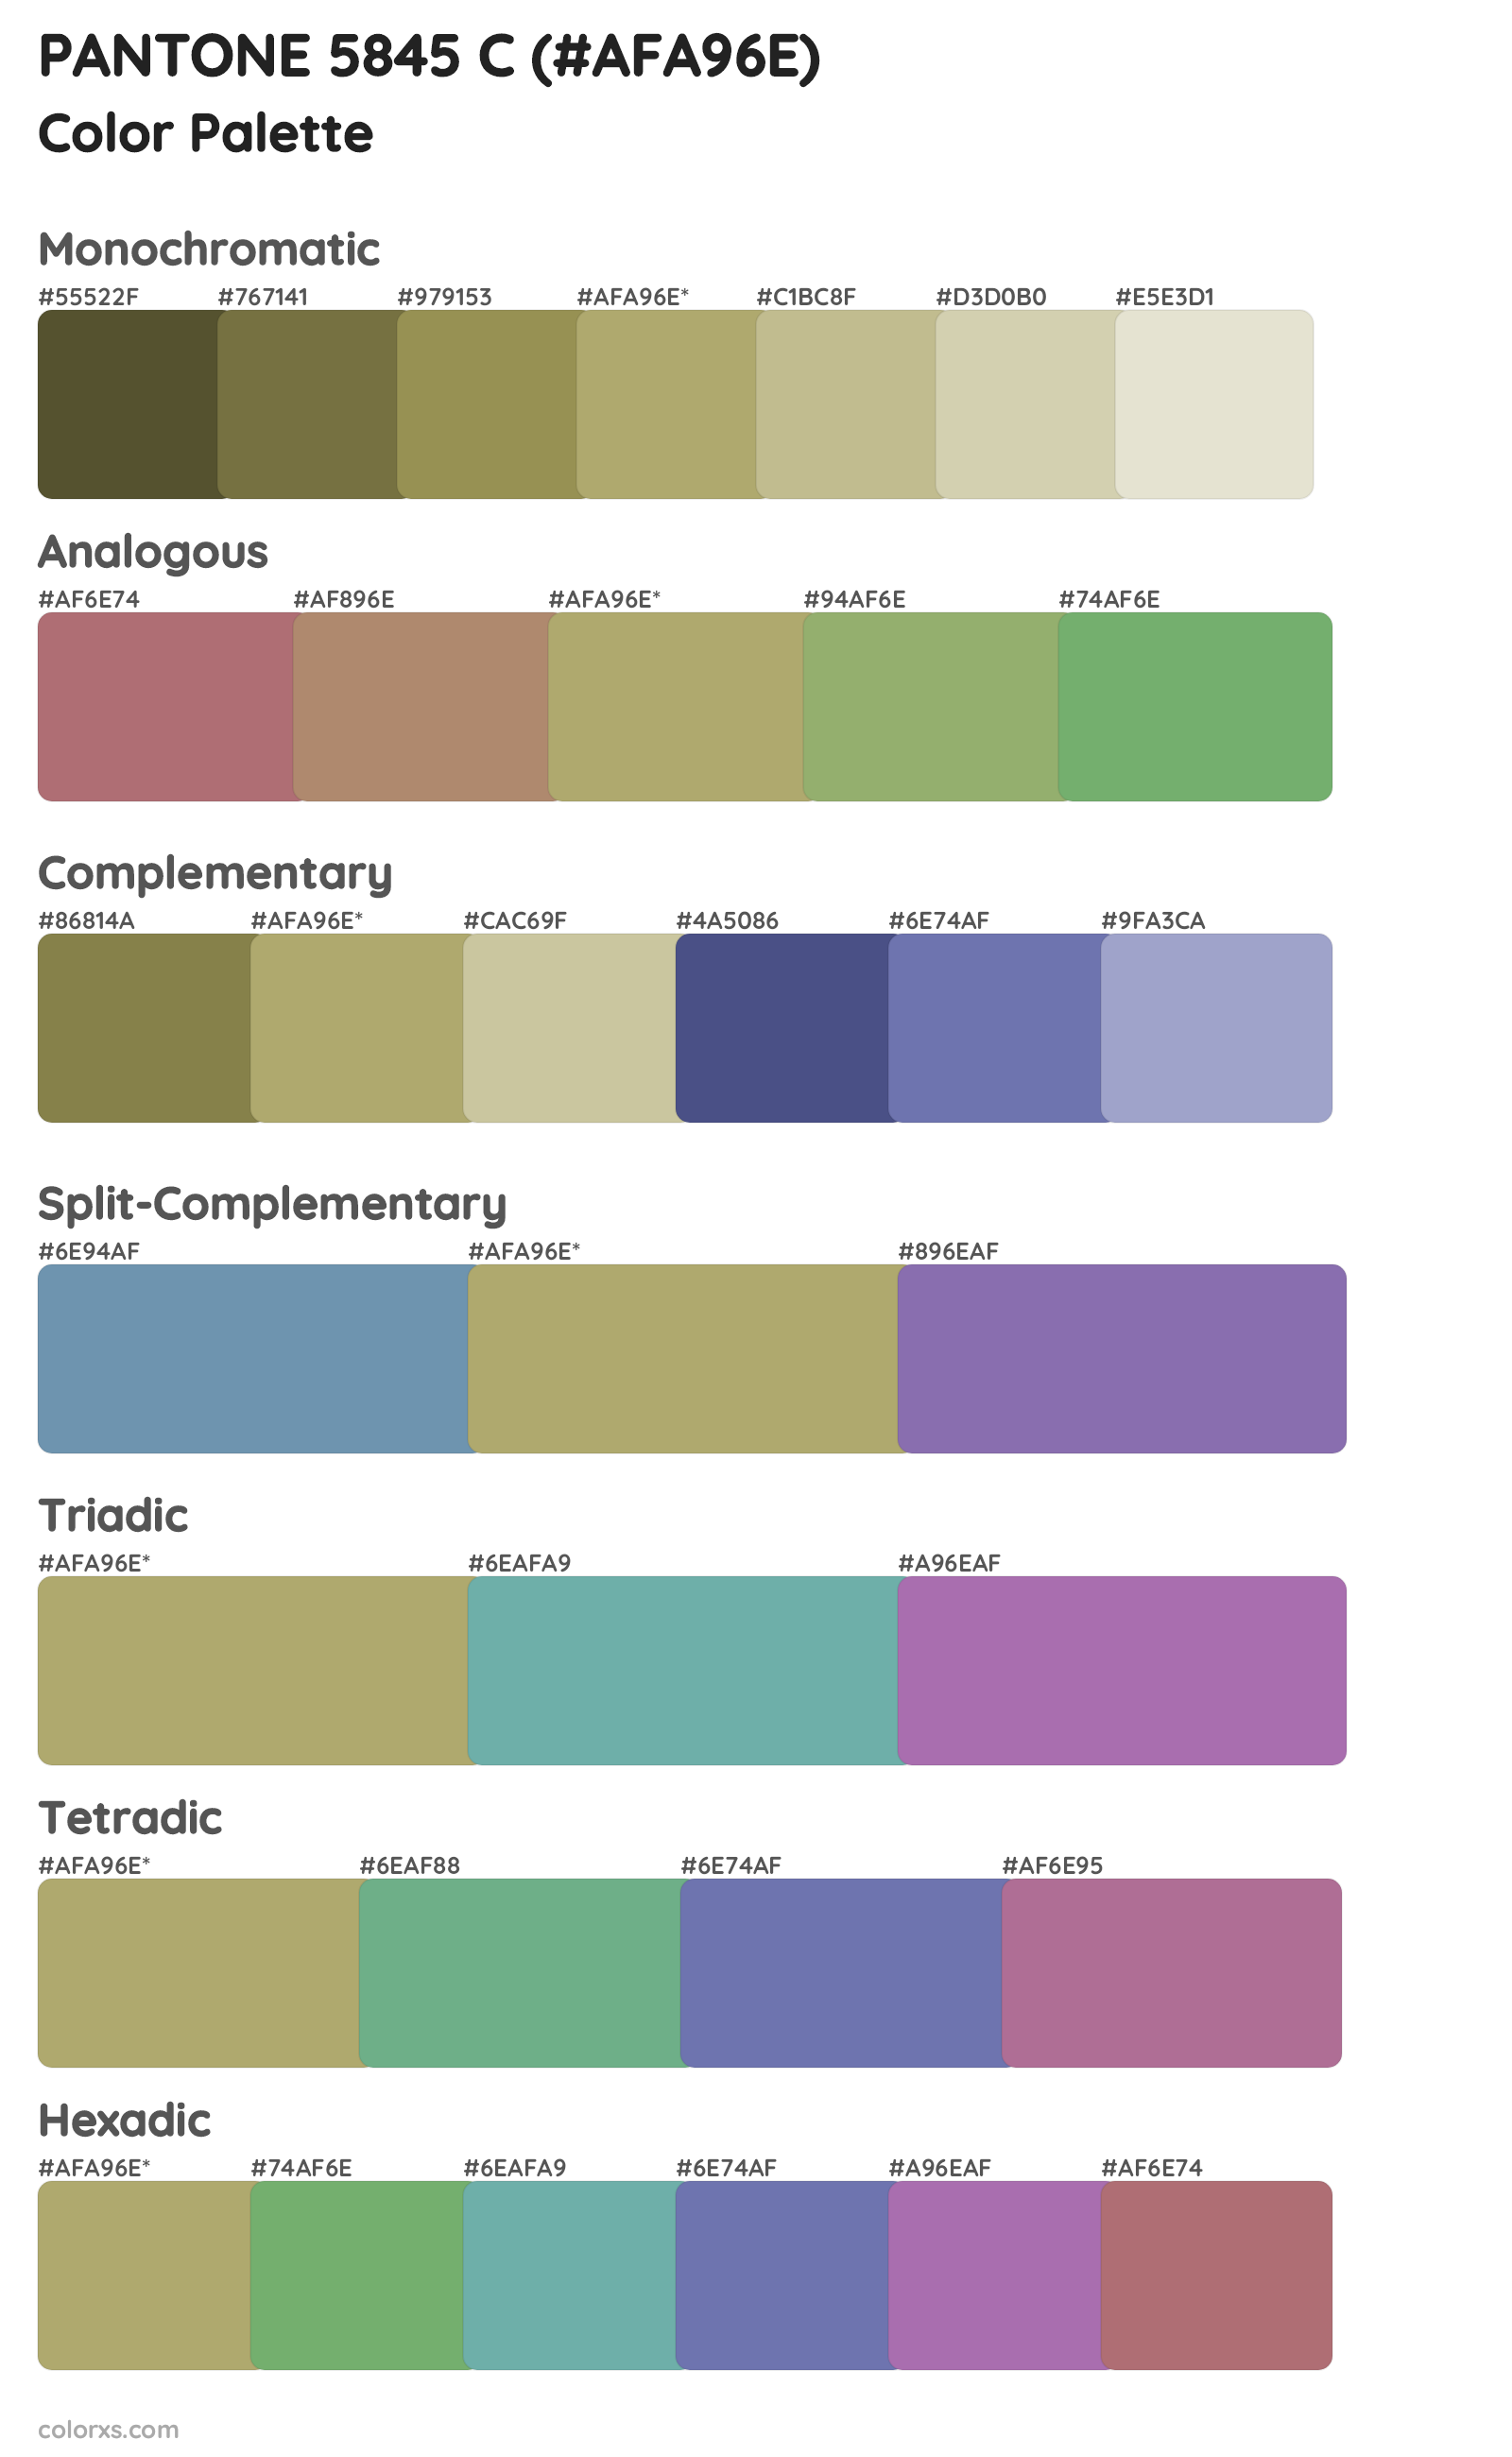 PANTONE 5845 C Color Scheme Palettes